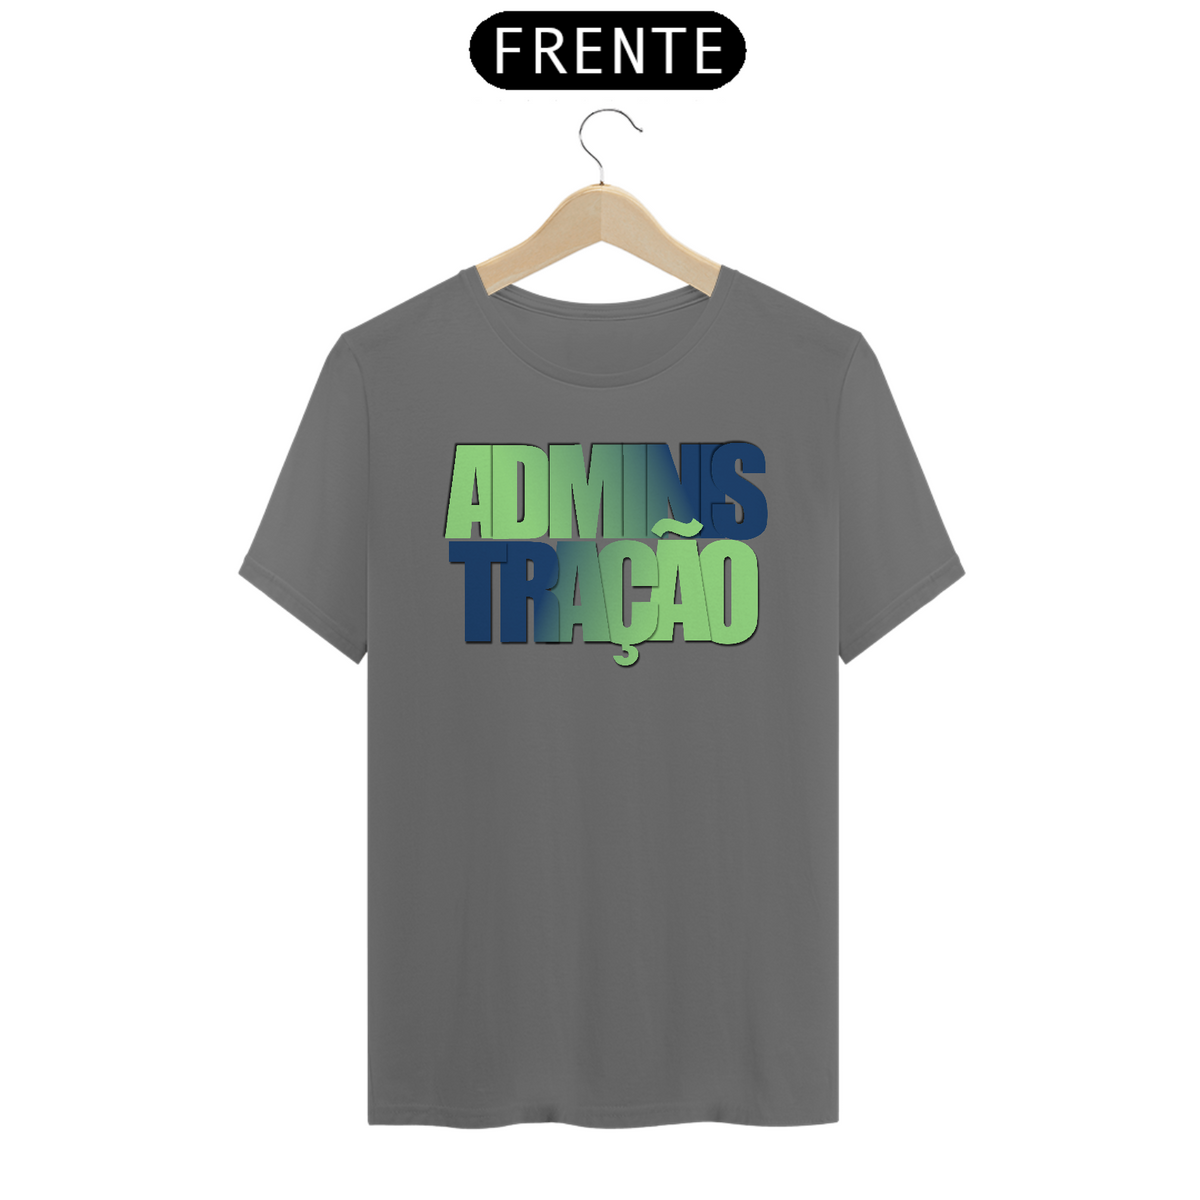 Nome do produto: Camiseta [administração] {cores pastéis} - frente - degradê azul e verde